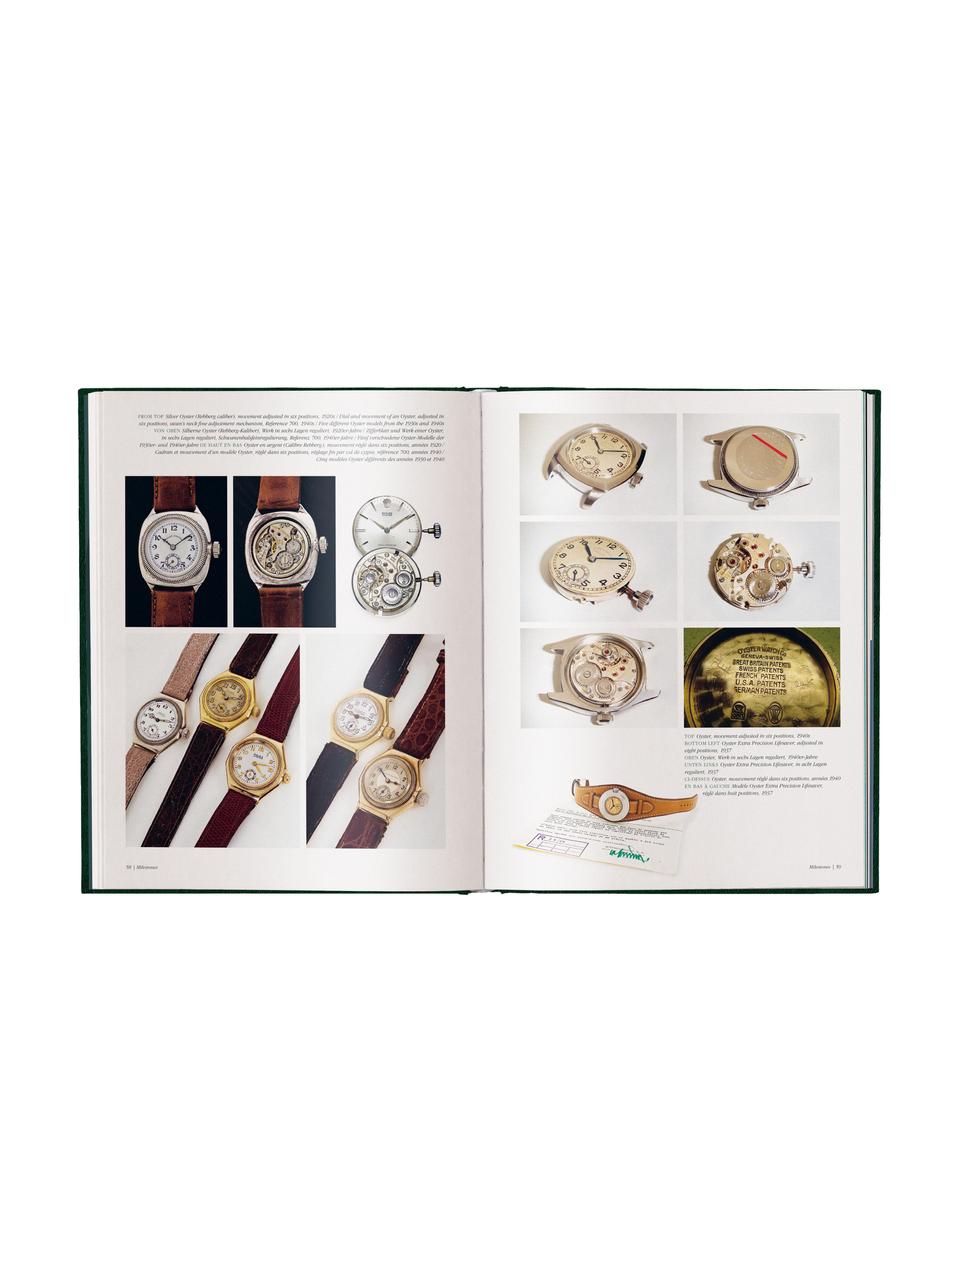 Libro illustrato The Watch Book Rolex - 3a edizione aggiornata ed ampliata, Carta, The Watch Book Rolex, Larg. 25 x Alt. 32 cm